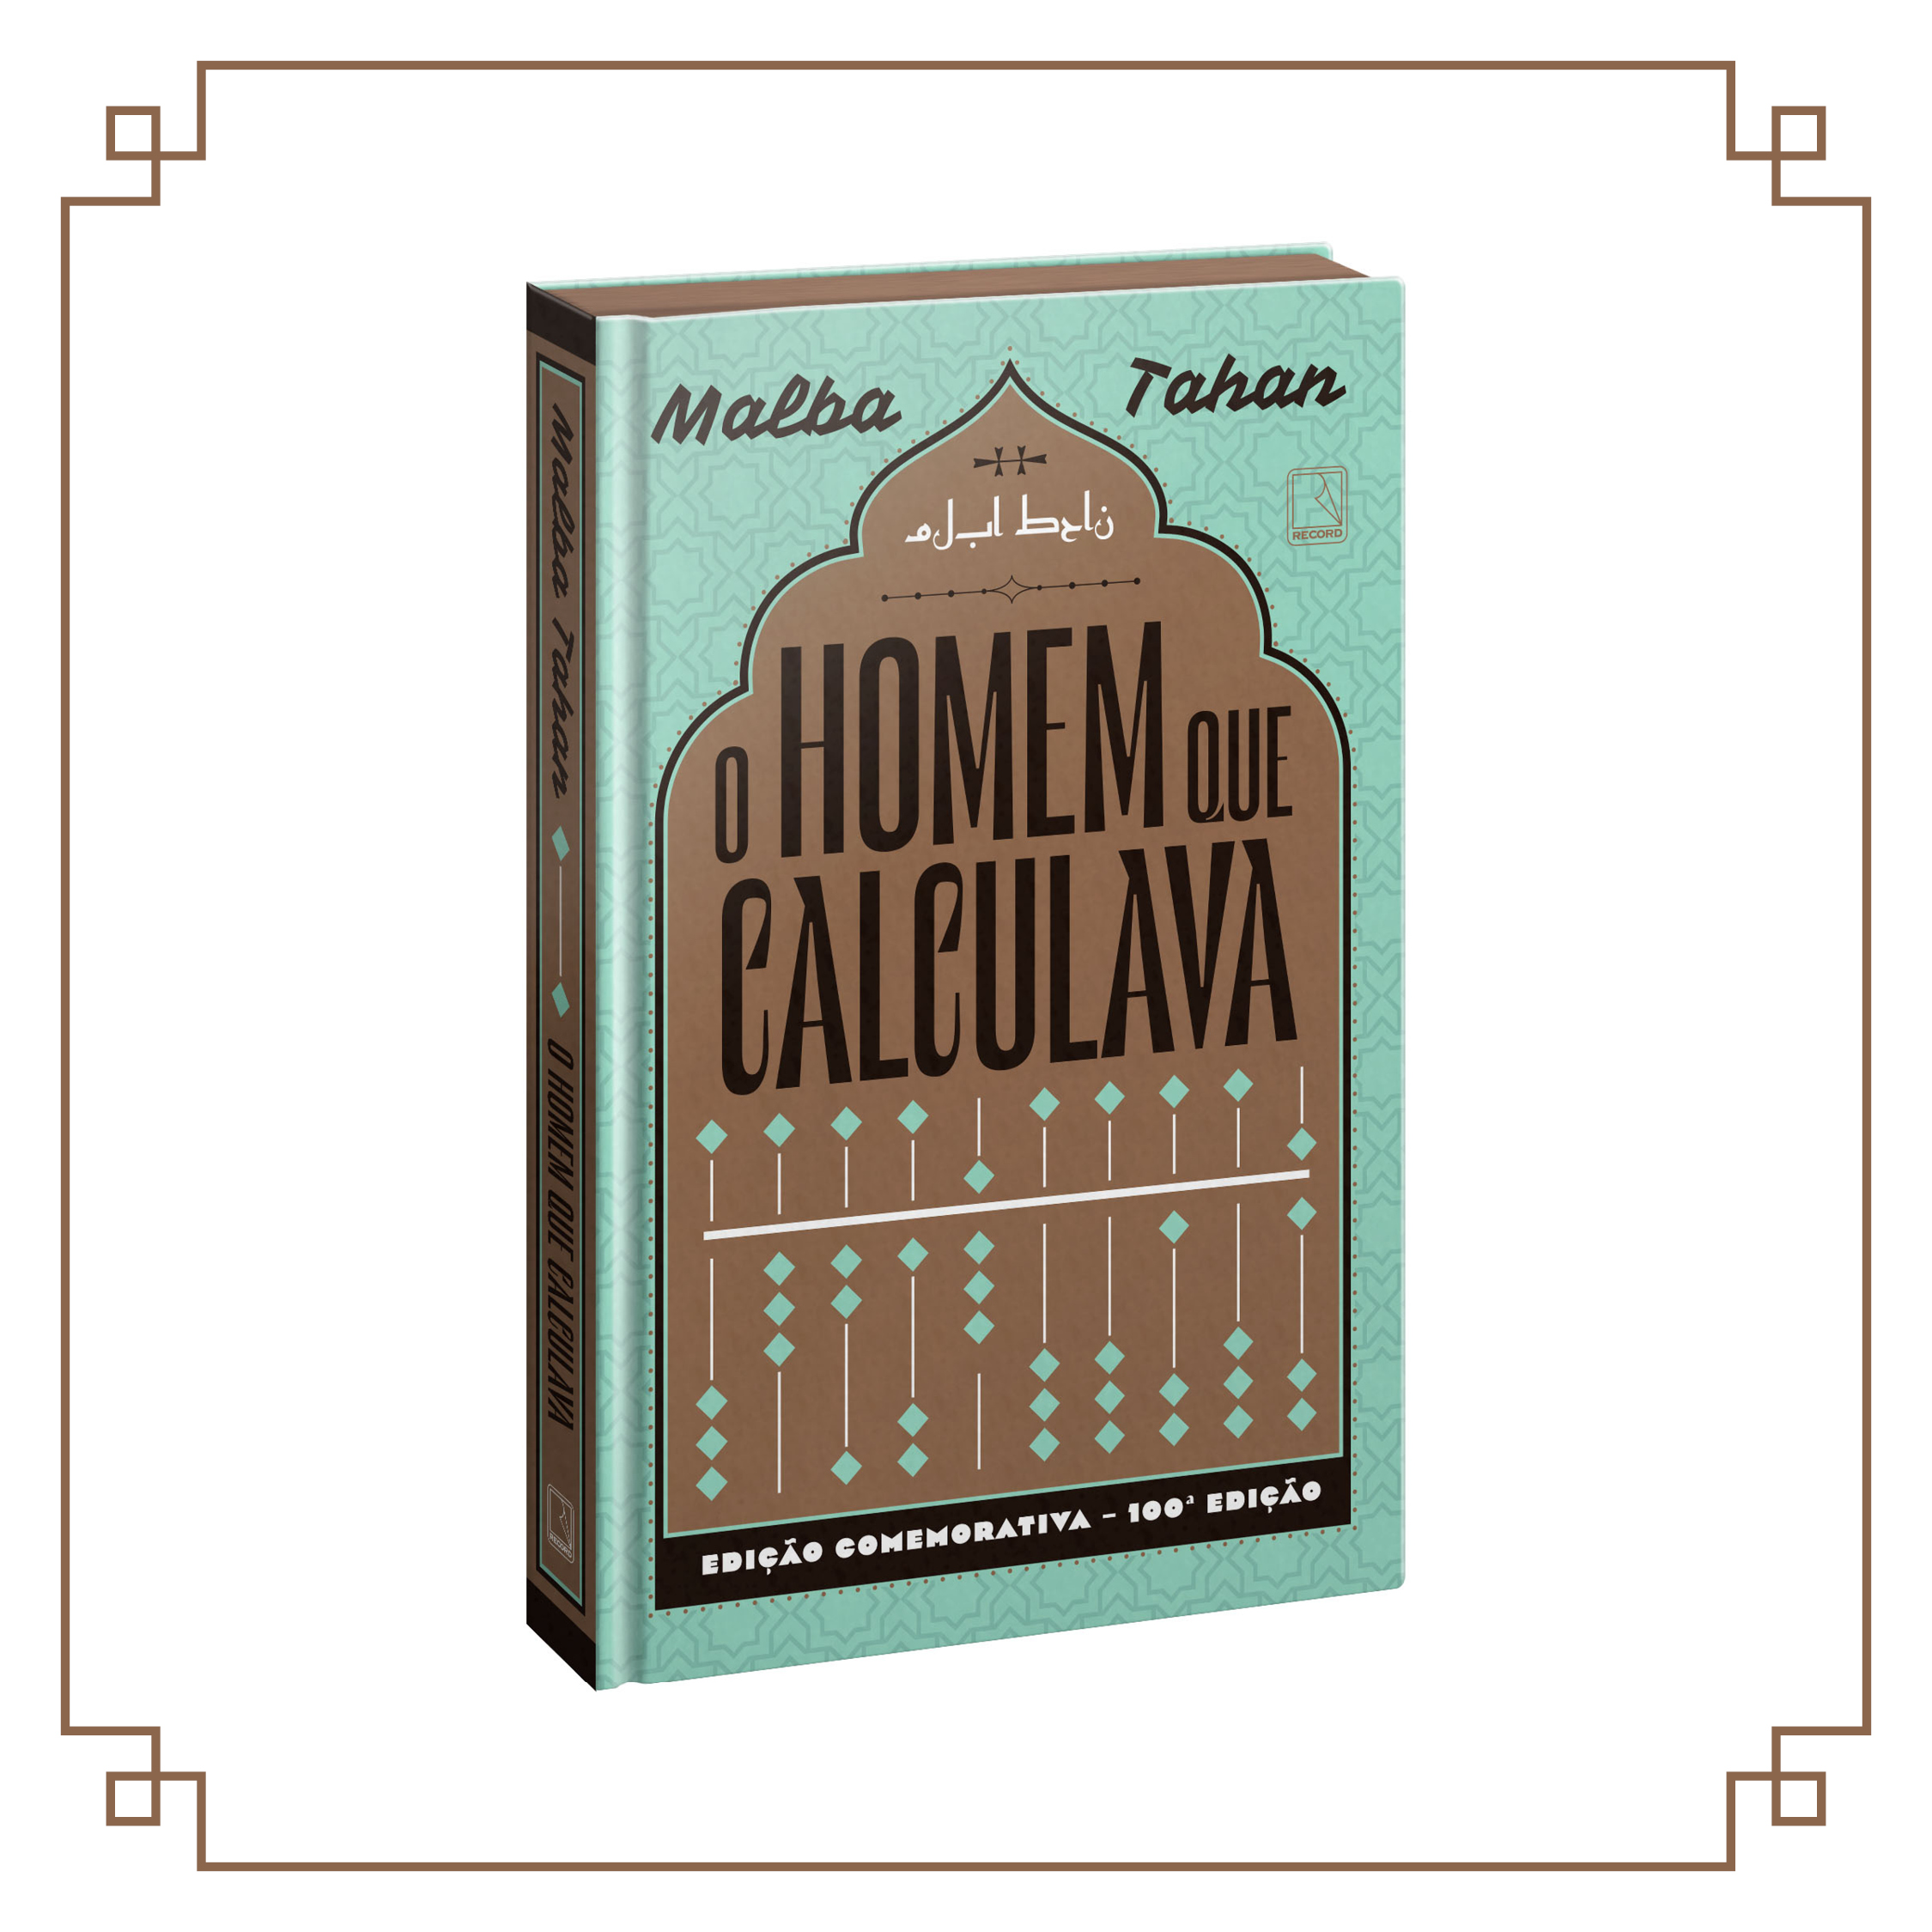 A HISTÓRIA DO HOMEM QUE CALCULAVA_Malba Tahan 